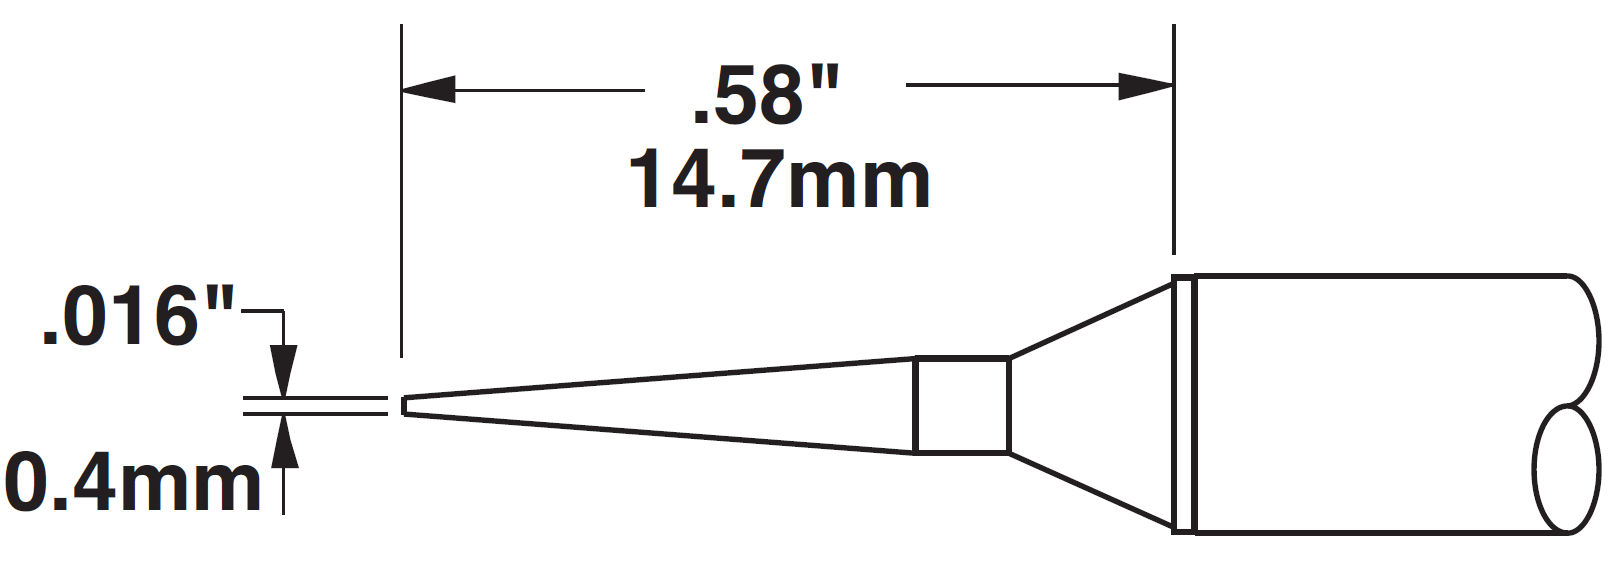 Картридж-наконечник для СV/MX, конус удлиненный 0.4х14.7мм (замена STTC-145)